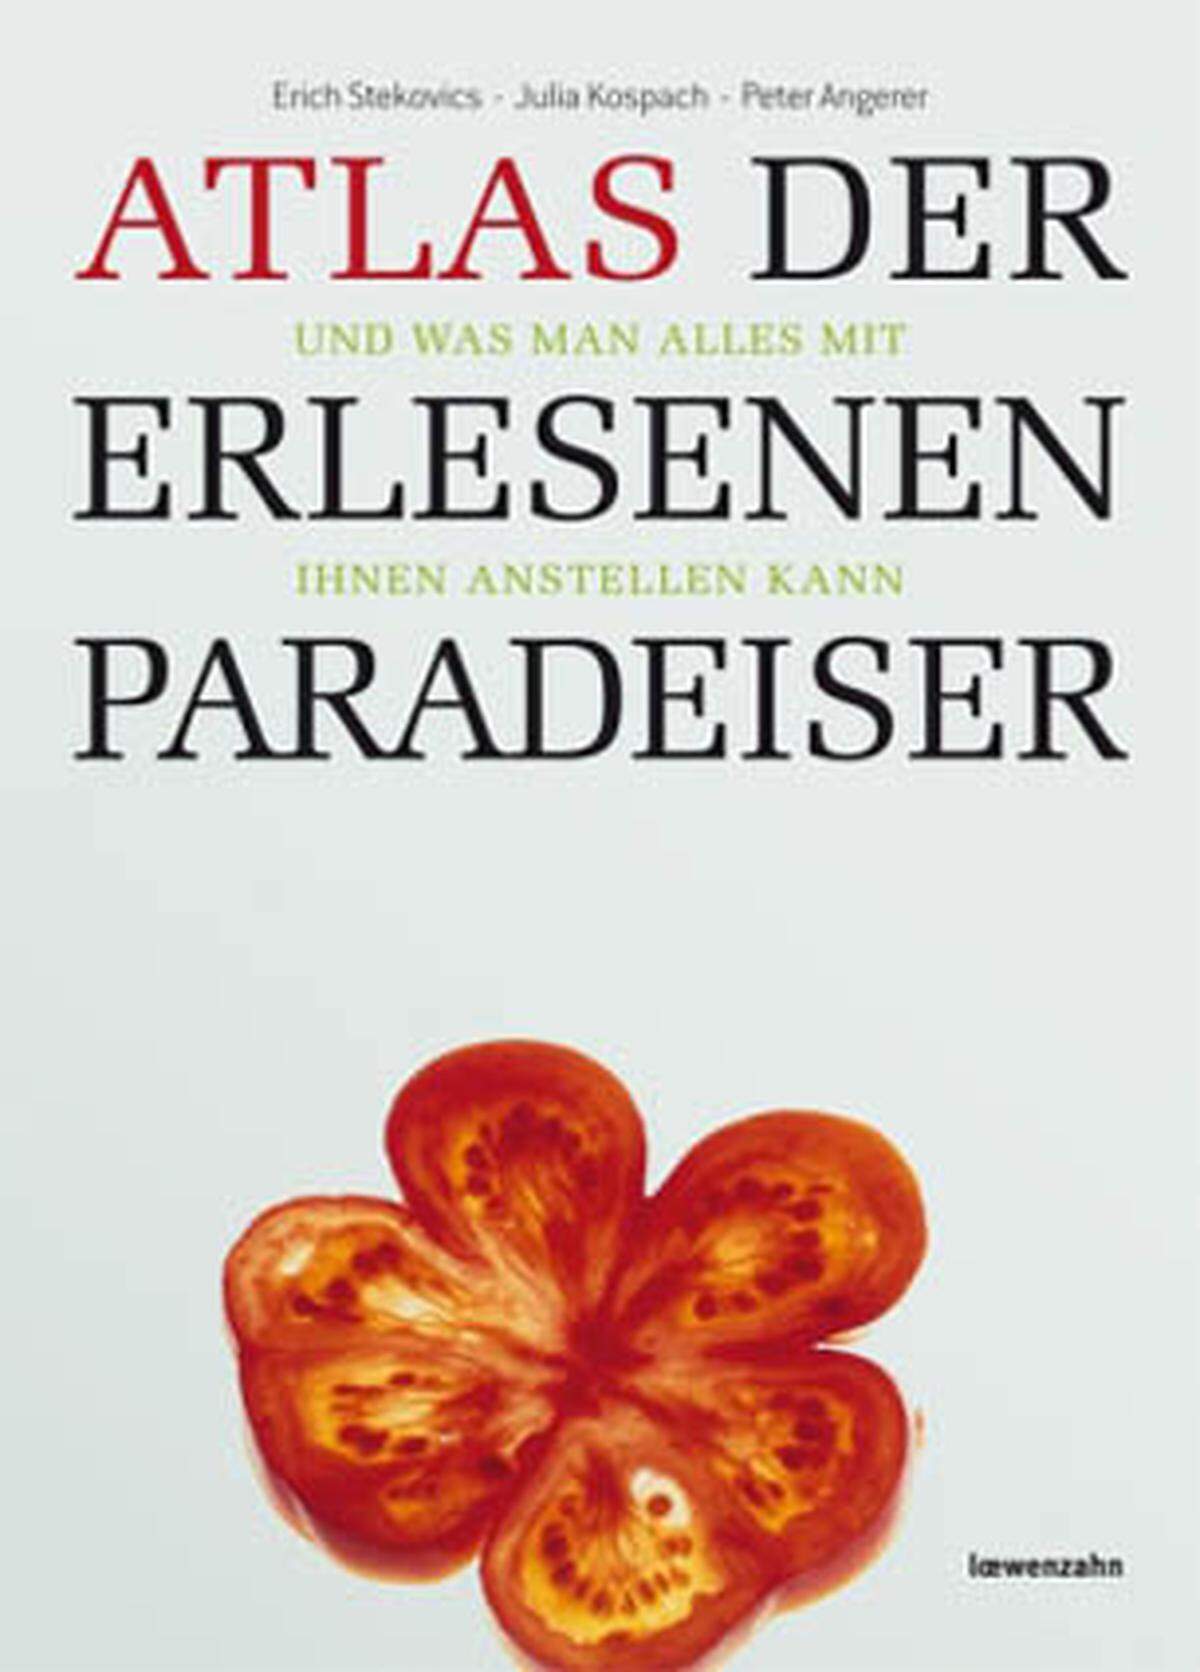 Erich Stekovics, Julia Kospach: Atlas der erlesenen Paradeiser, Loewenzahn Verlag, 59,90 Euro.